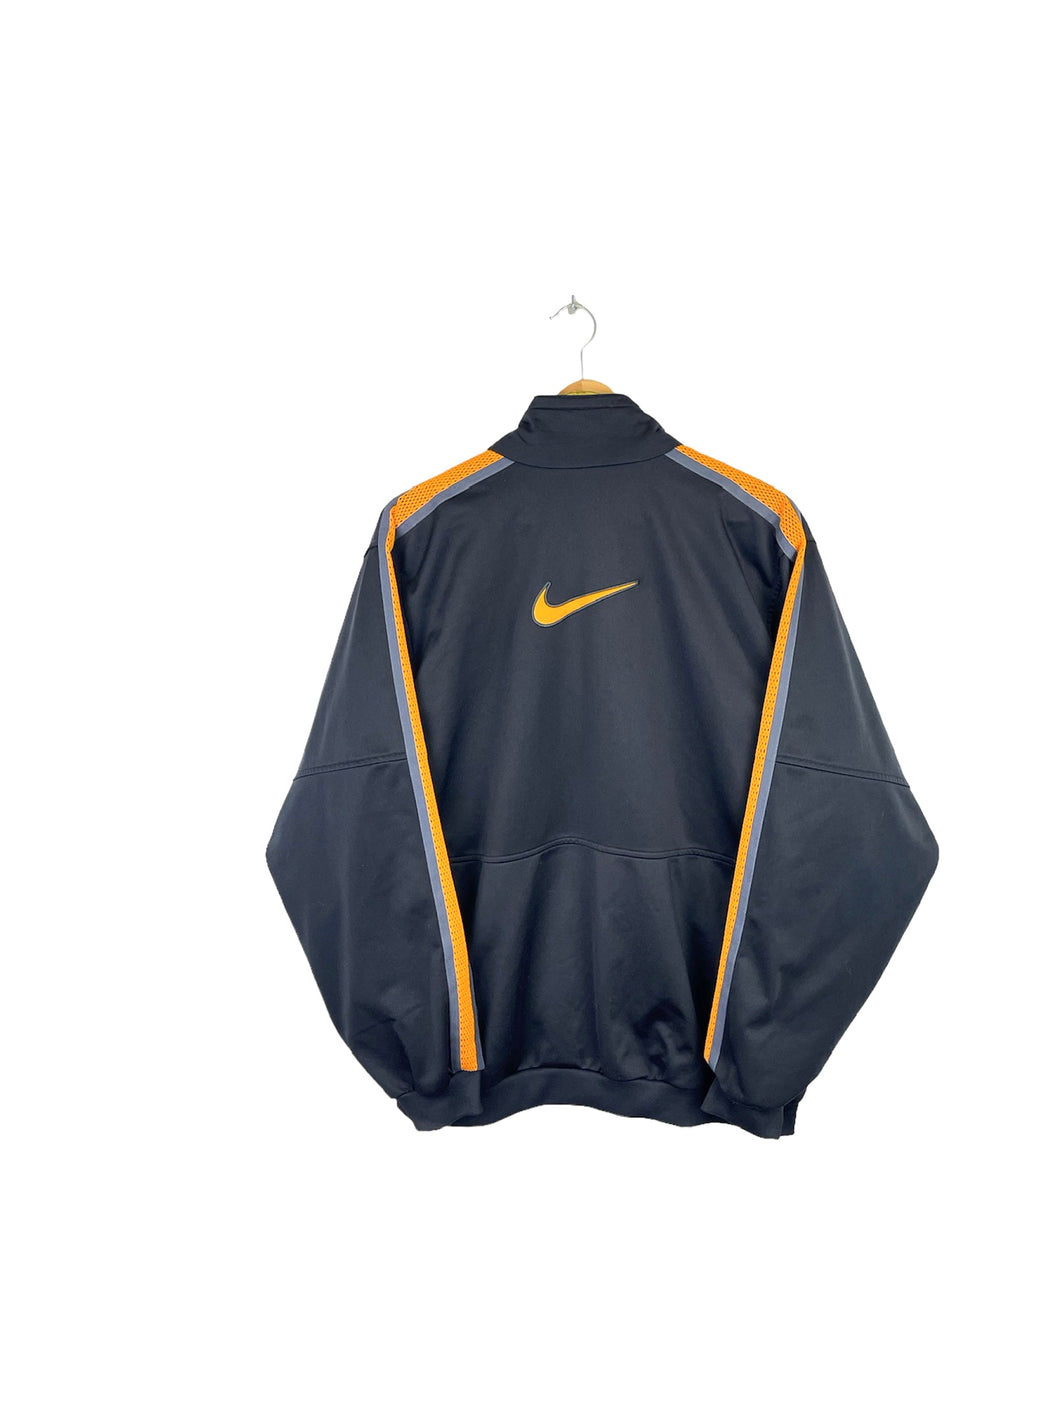 Nike Jacket - XLarge